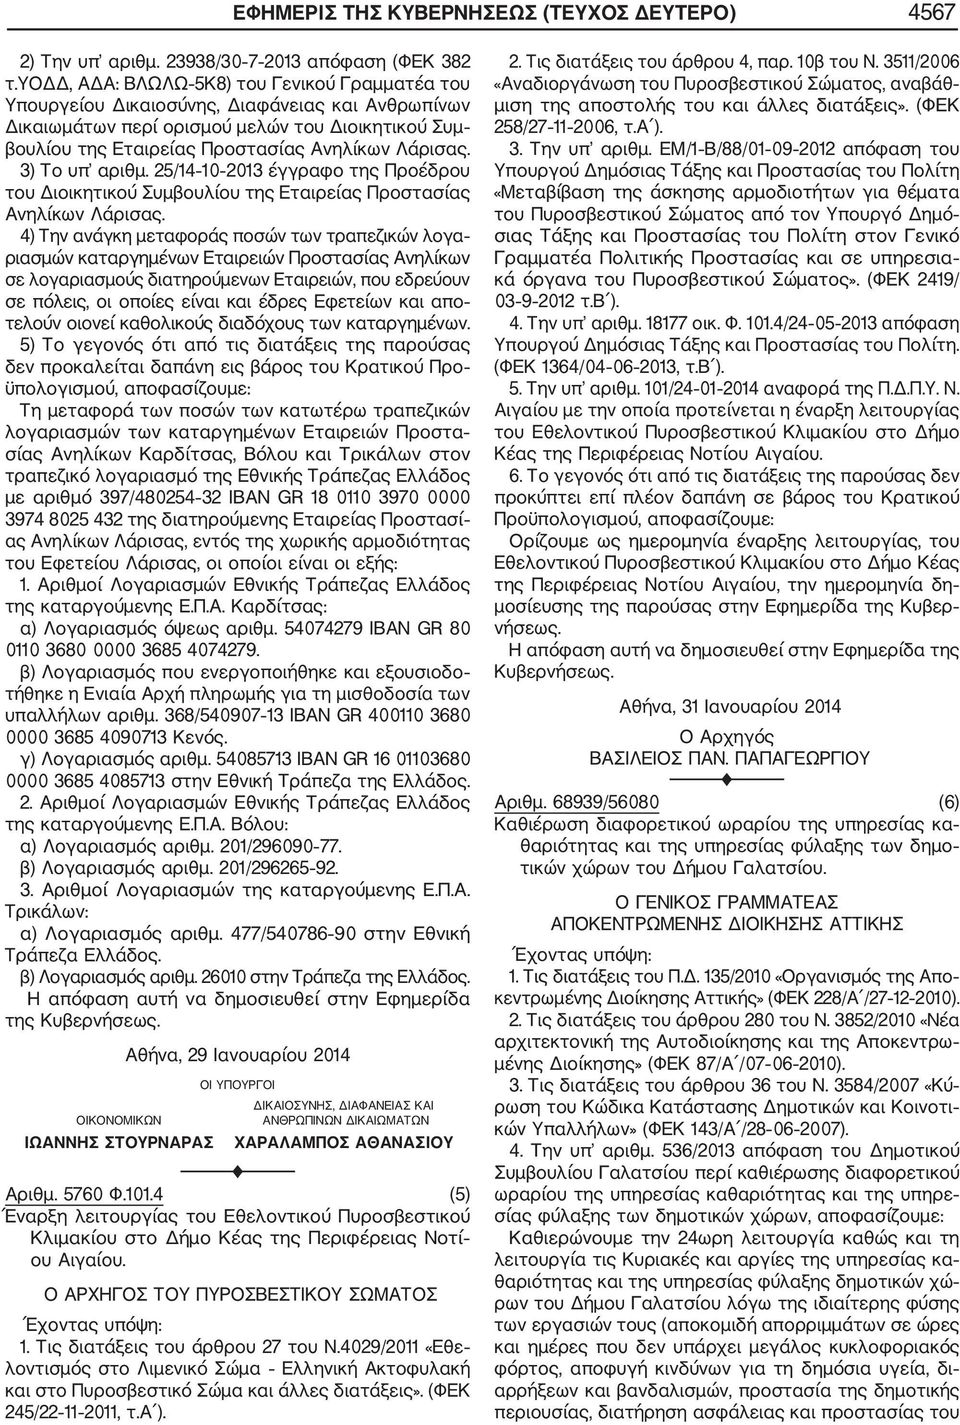 3) Το υπ αριθμ. 25/14 10 2013 έγγραφο της Προέδρου του Διοικητικού Συμβουλίου της Εταιρείας Προστασίας Ανηλίκων Λάρισας.